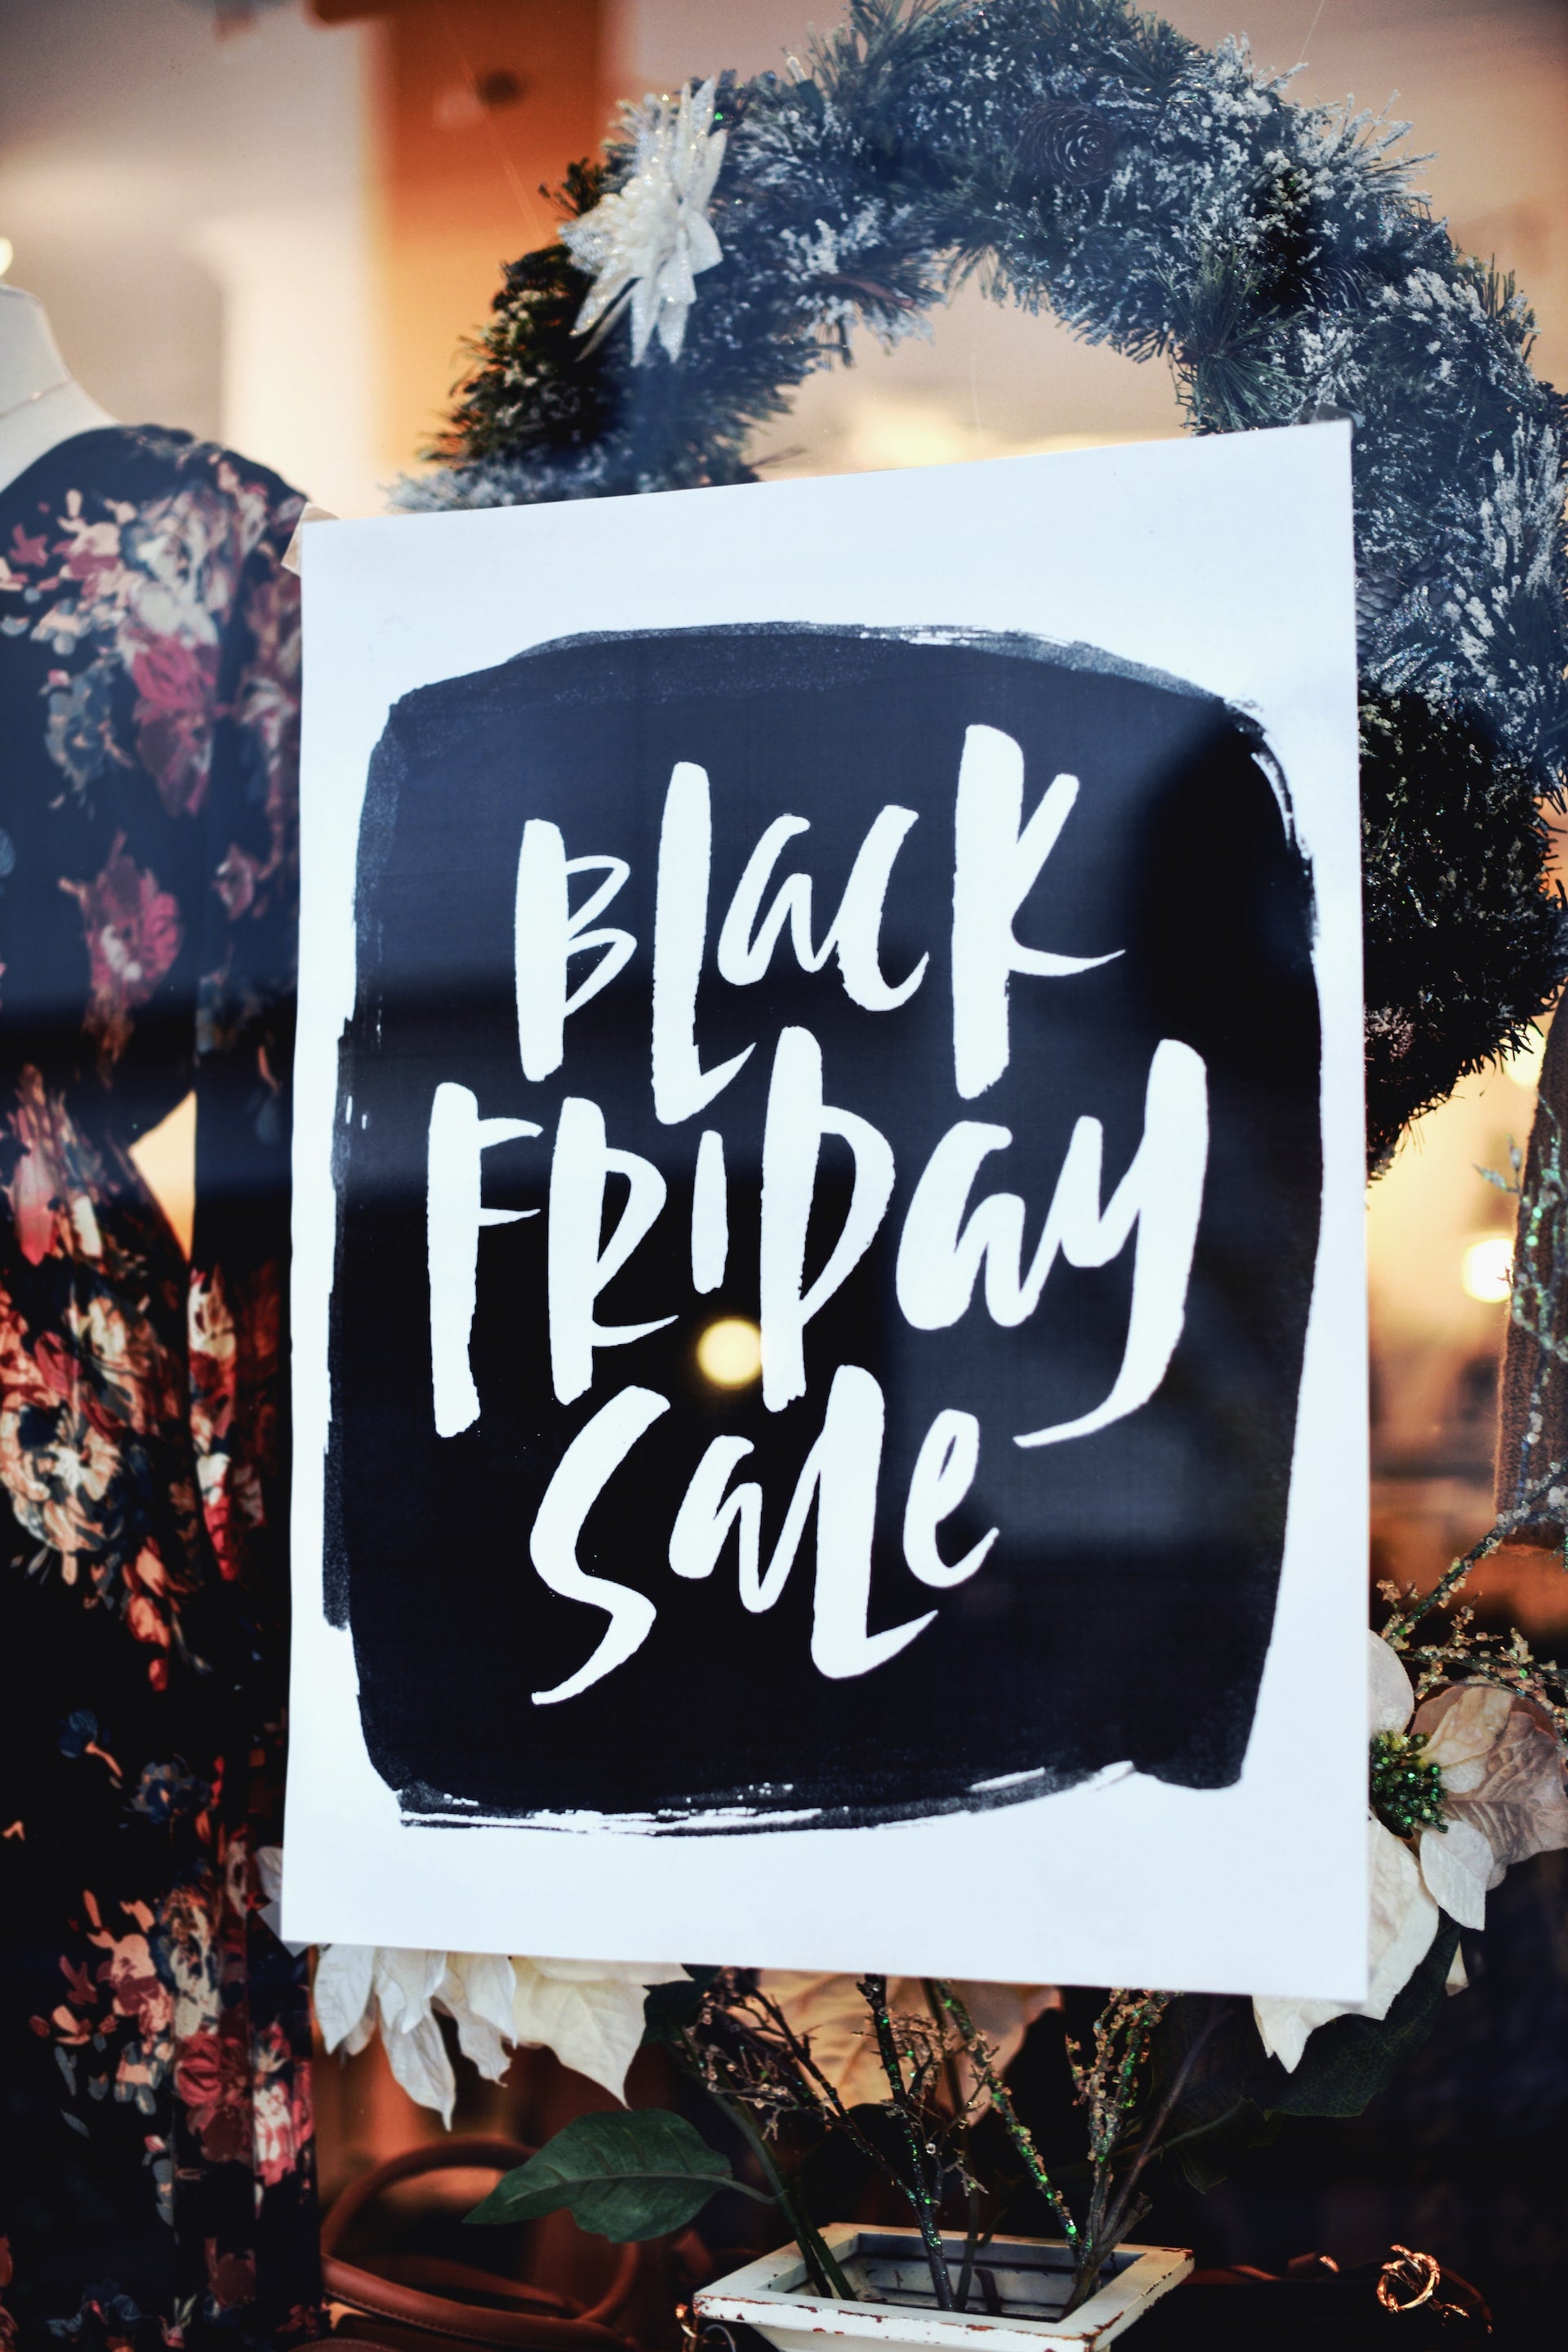 Black Friday: ofertas, consejos y tiendas que lanzan los mejores descuentos